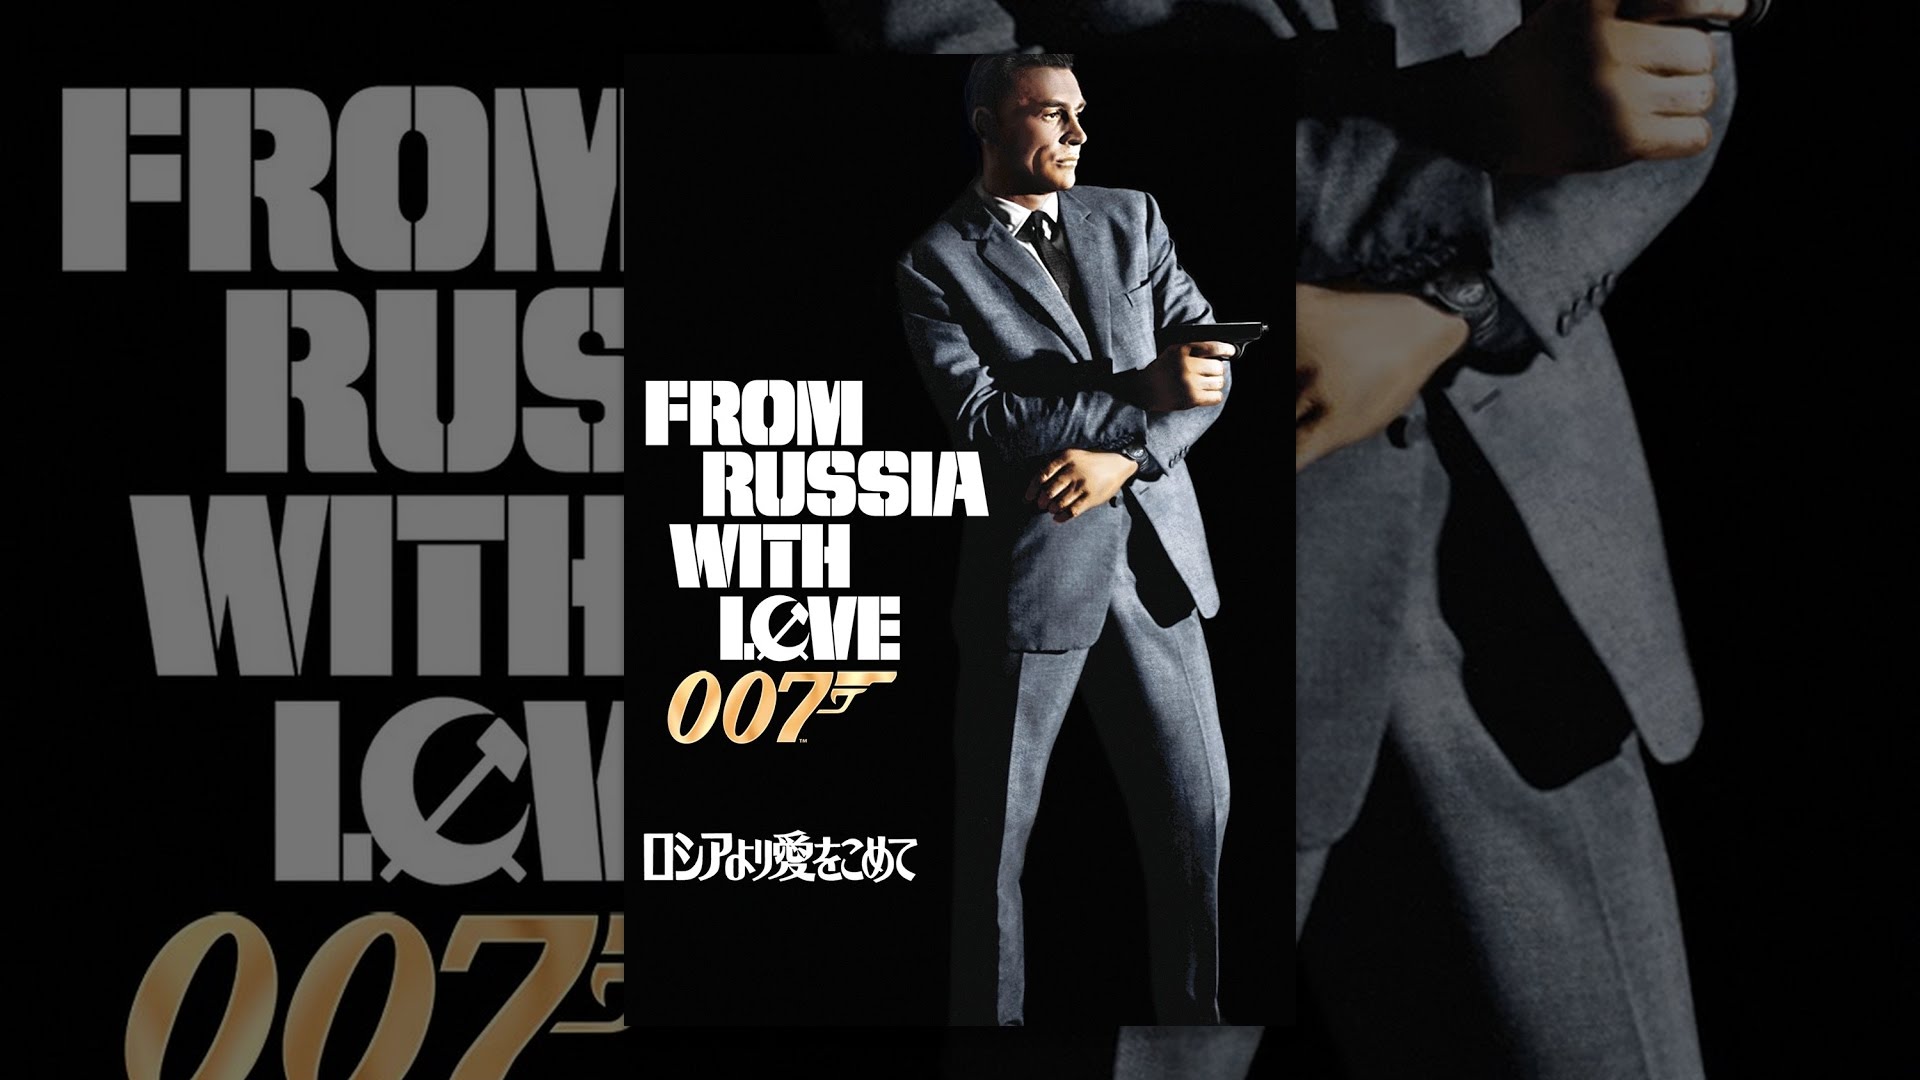 訃報-初代007ジェームズ・ボンド役で知られるショーン・コネリーさん 